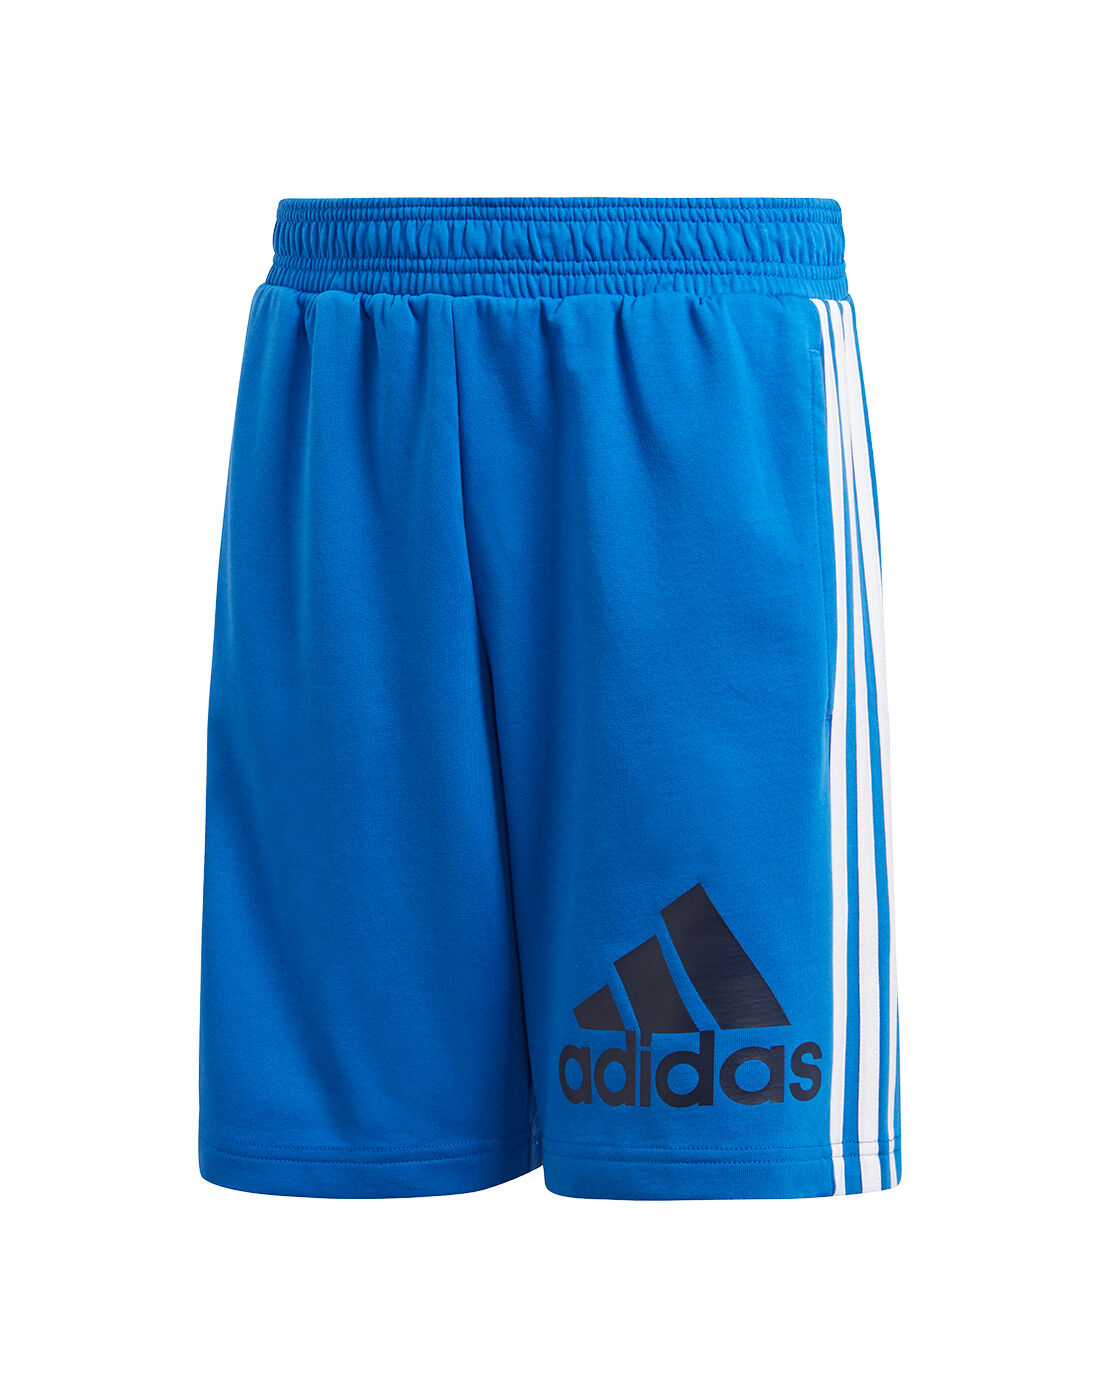 Boys Adidas Shorts Flash Sales, 60% OFF | www.ingeniovirtual.com